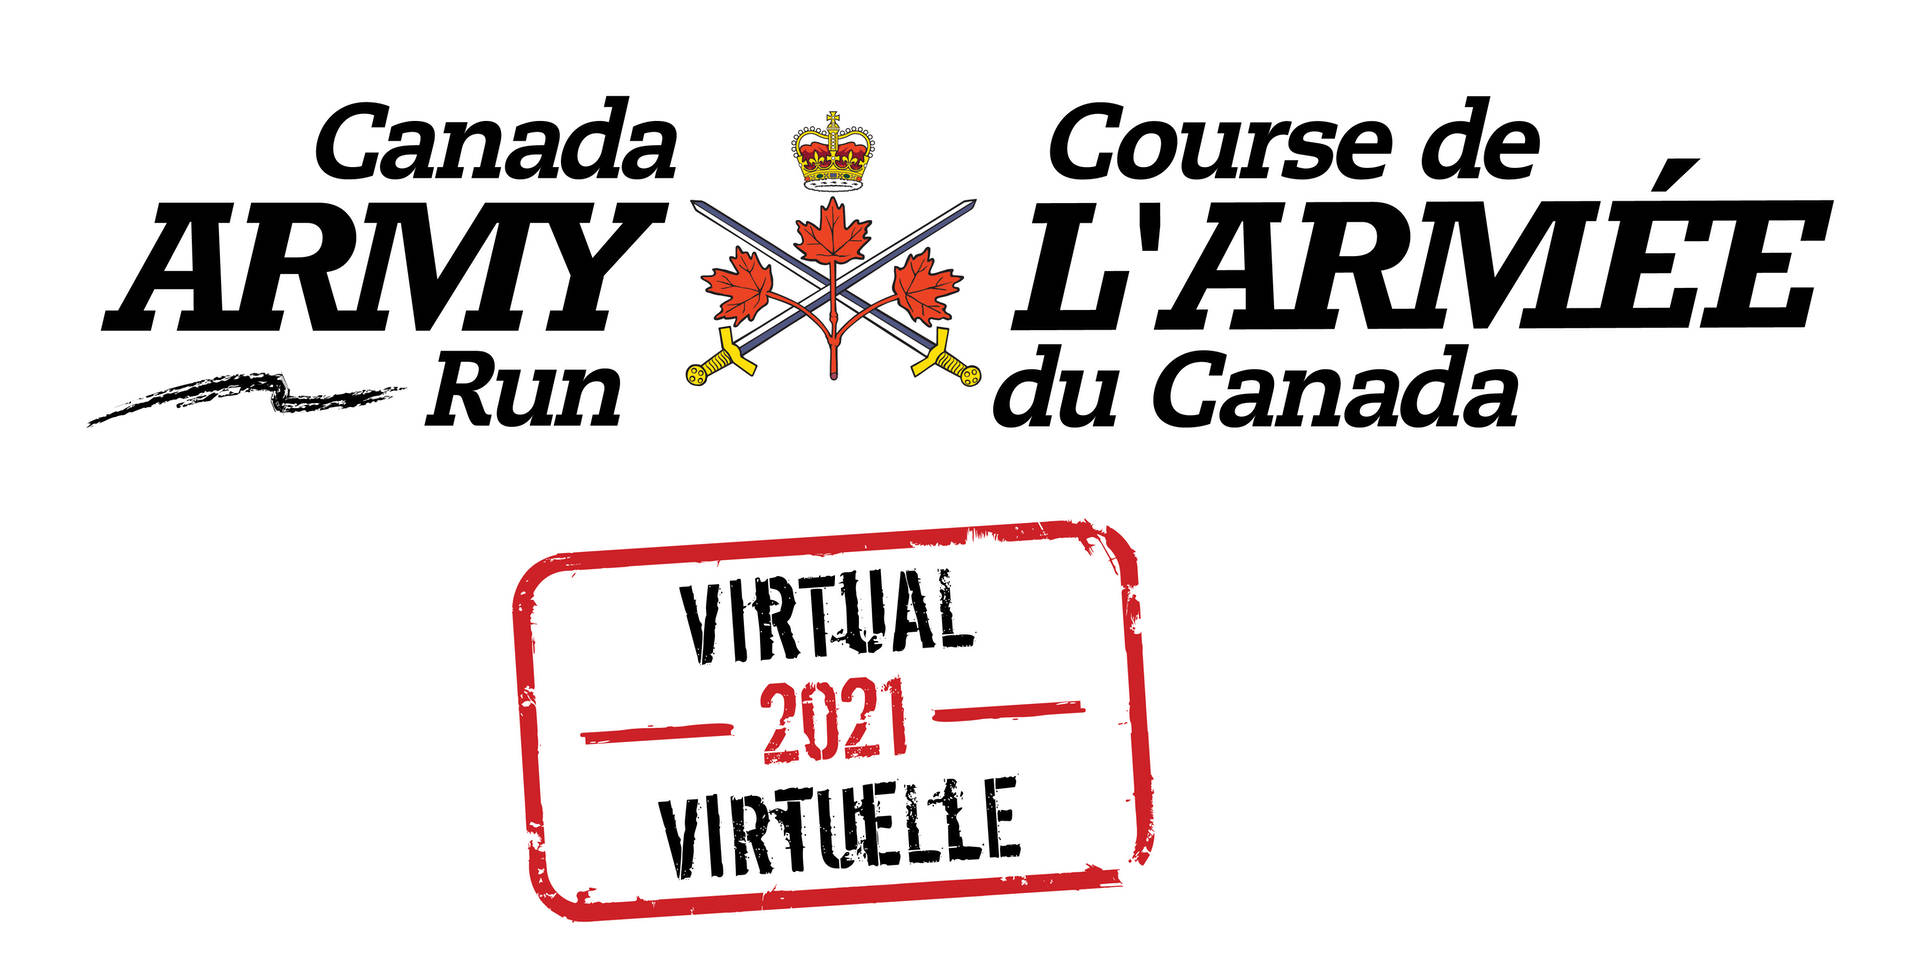 Canada Army Run Logo